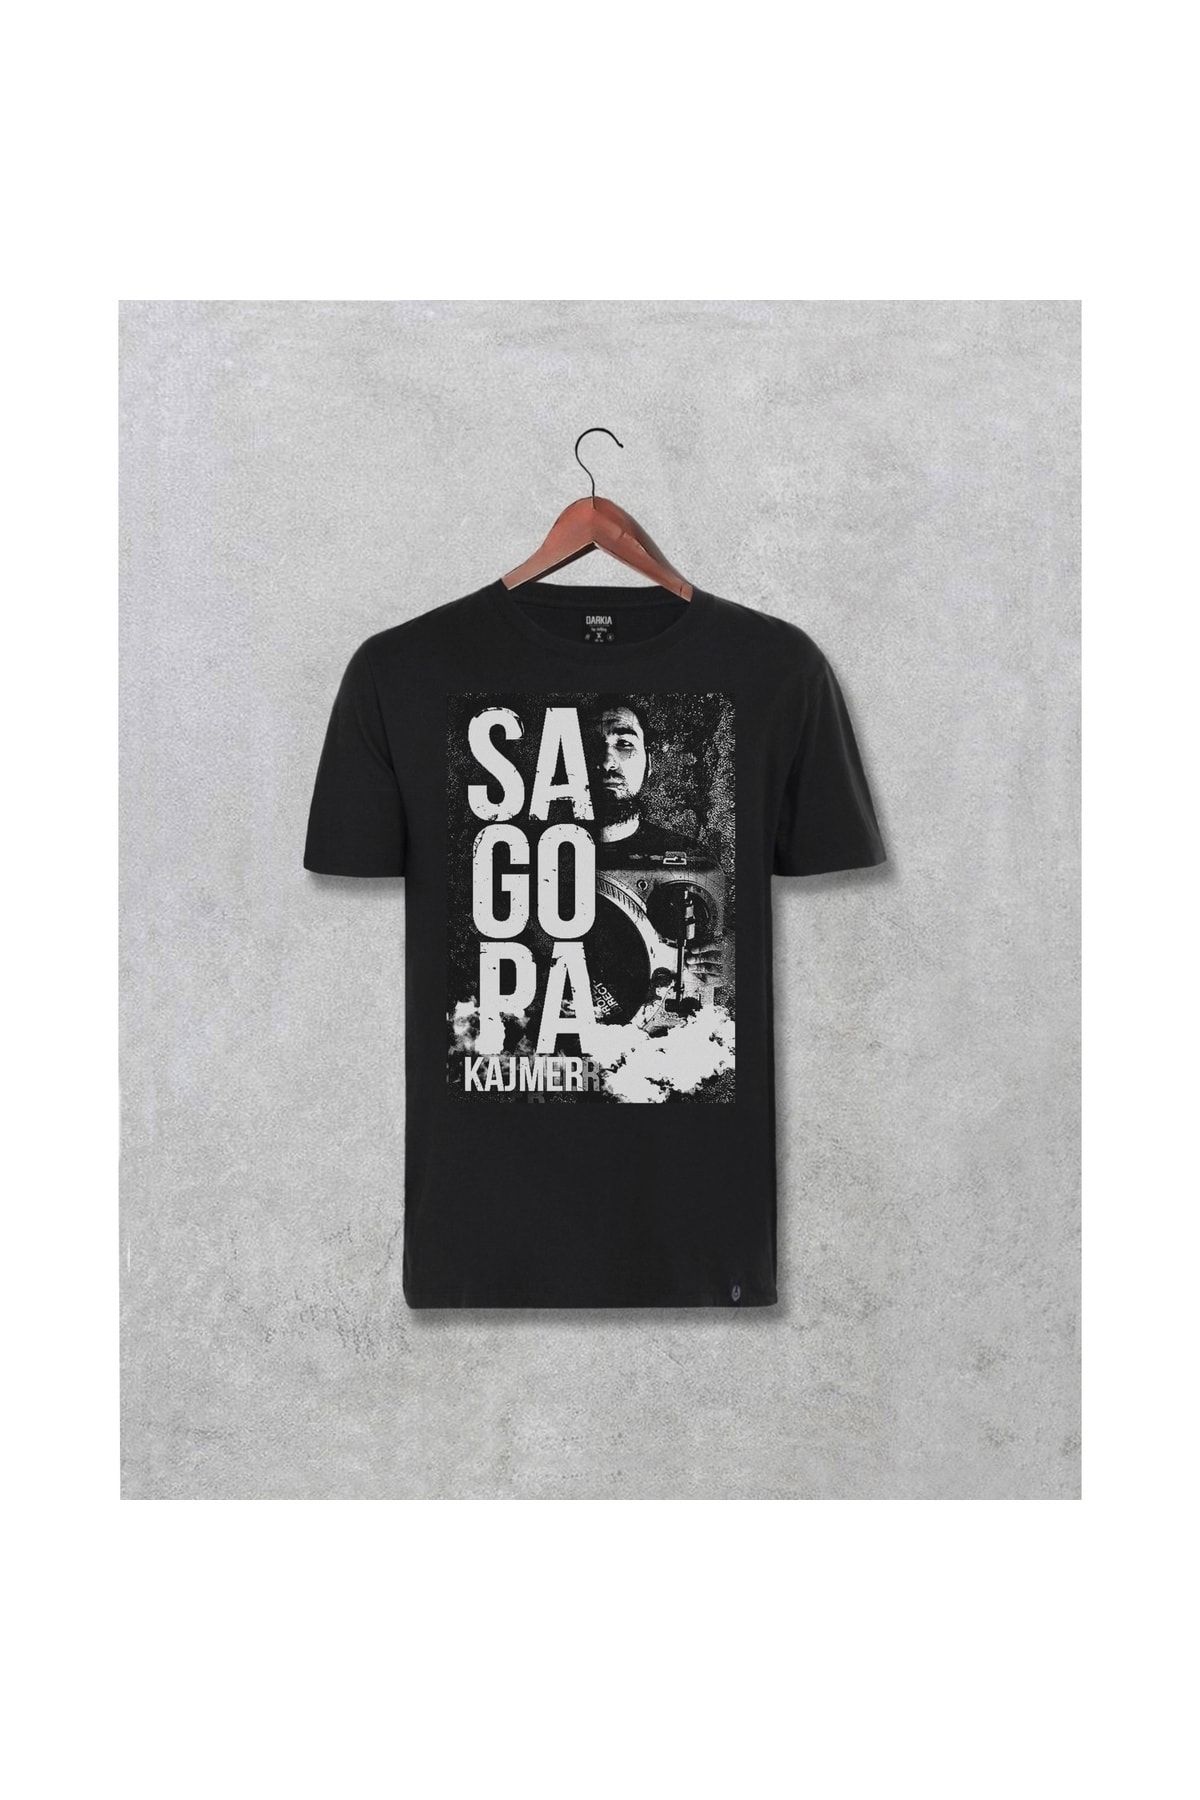 Caddemia Sagopa Kajmer Tasarımı Baskılı T-shirt